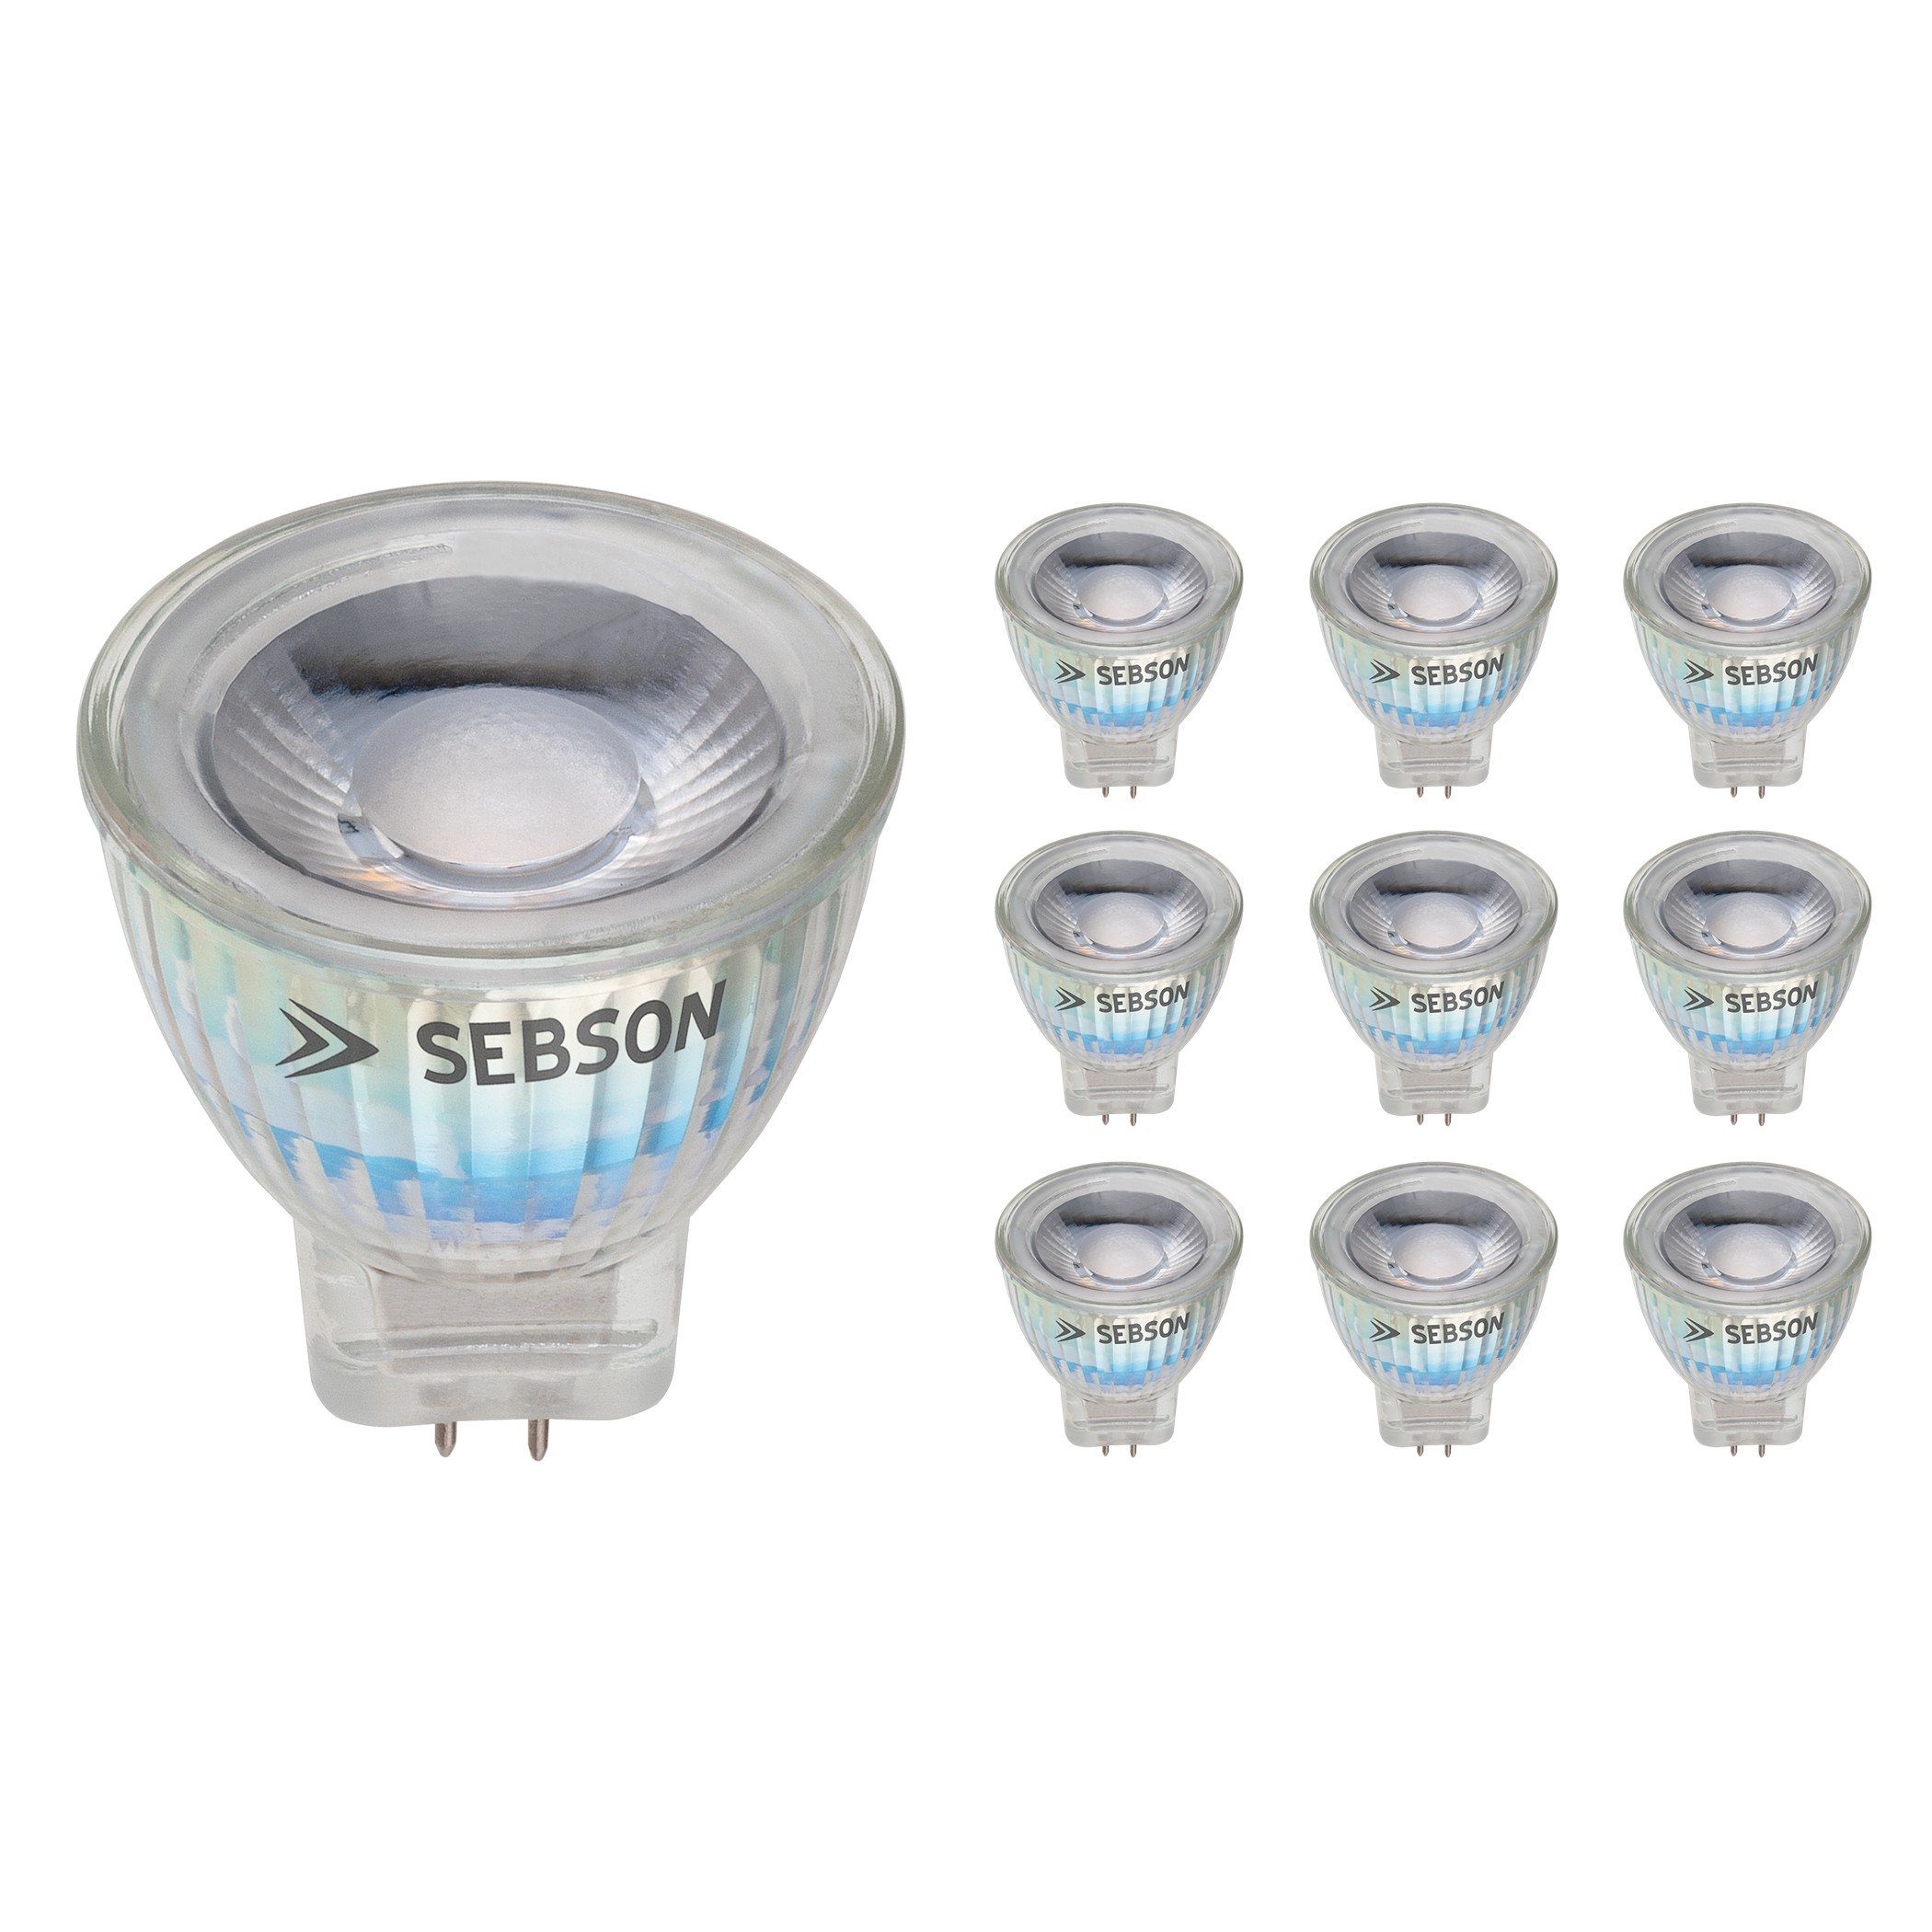 SEBSON LED Lampe GU4/ MR11 warmweiß 3W 220 Lumen, LED Spotlight 36°, 12V  DC, ø35x40mm, 10er Pack LED-Leuchtmittel